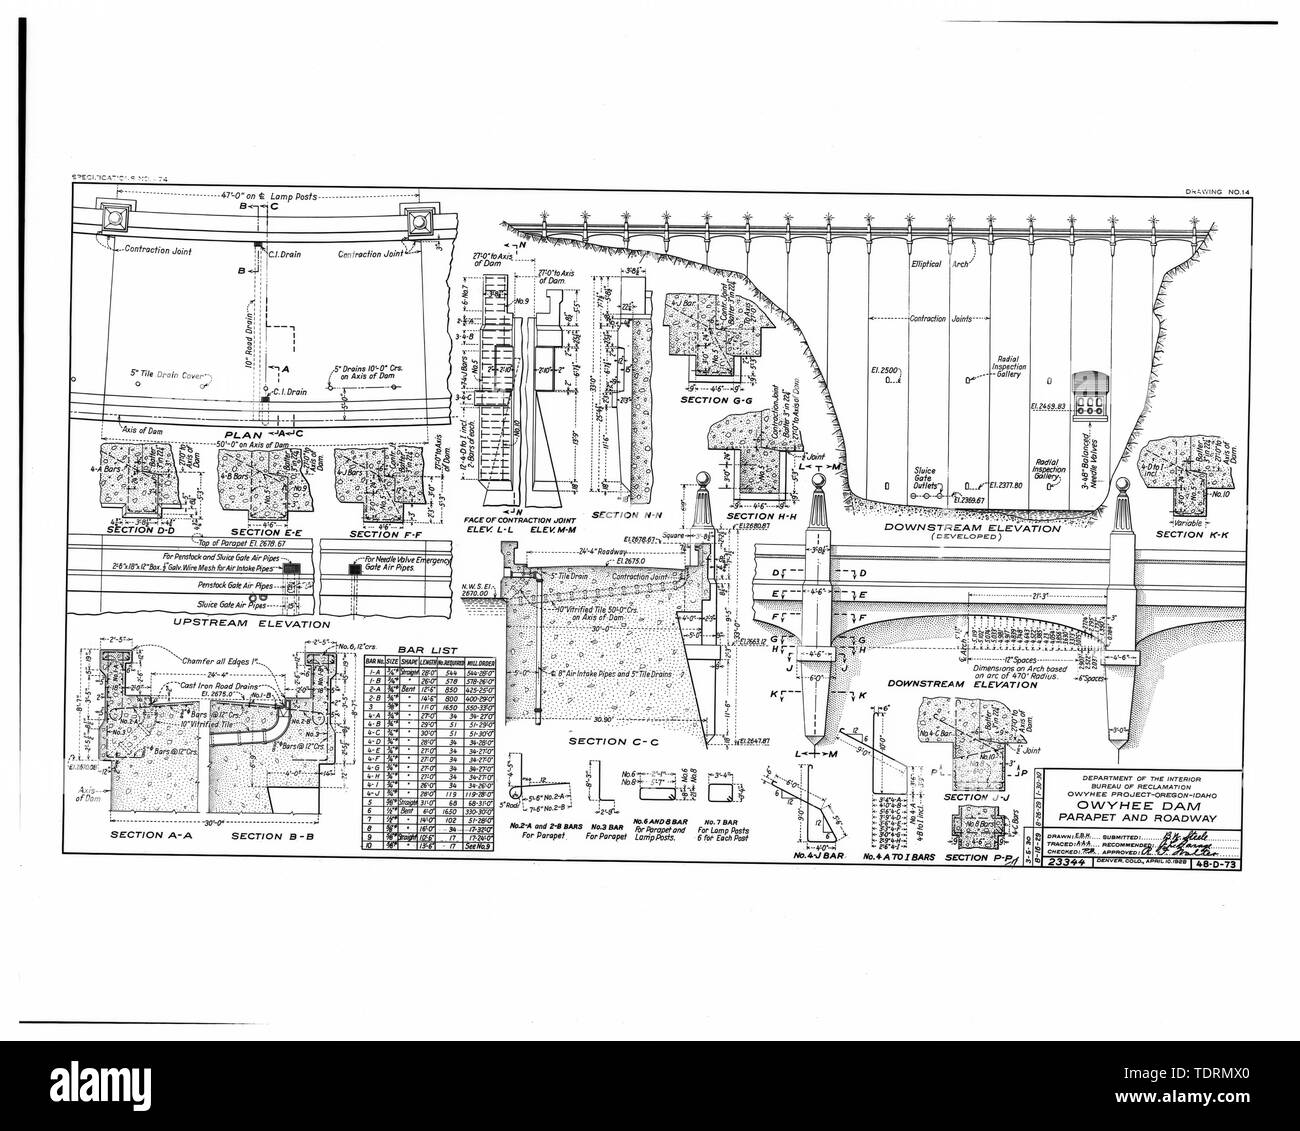 Fotografische Kopie der ursprünglichen Konstruktion Zeichnung vom April 10, 1928 (aus Gruppe 115, Denver Filiale der National Archives, Denver). OWYHEE DAM; Brüstung und Fahrbahn. - Owyhee Dam, über Owyhee Fluss, Nyssa, Malheur County, ODER Stockfoto